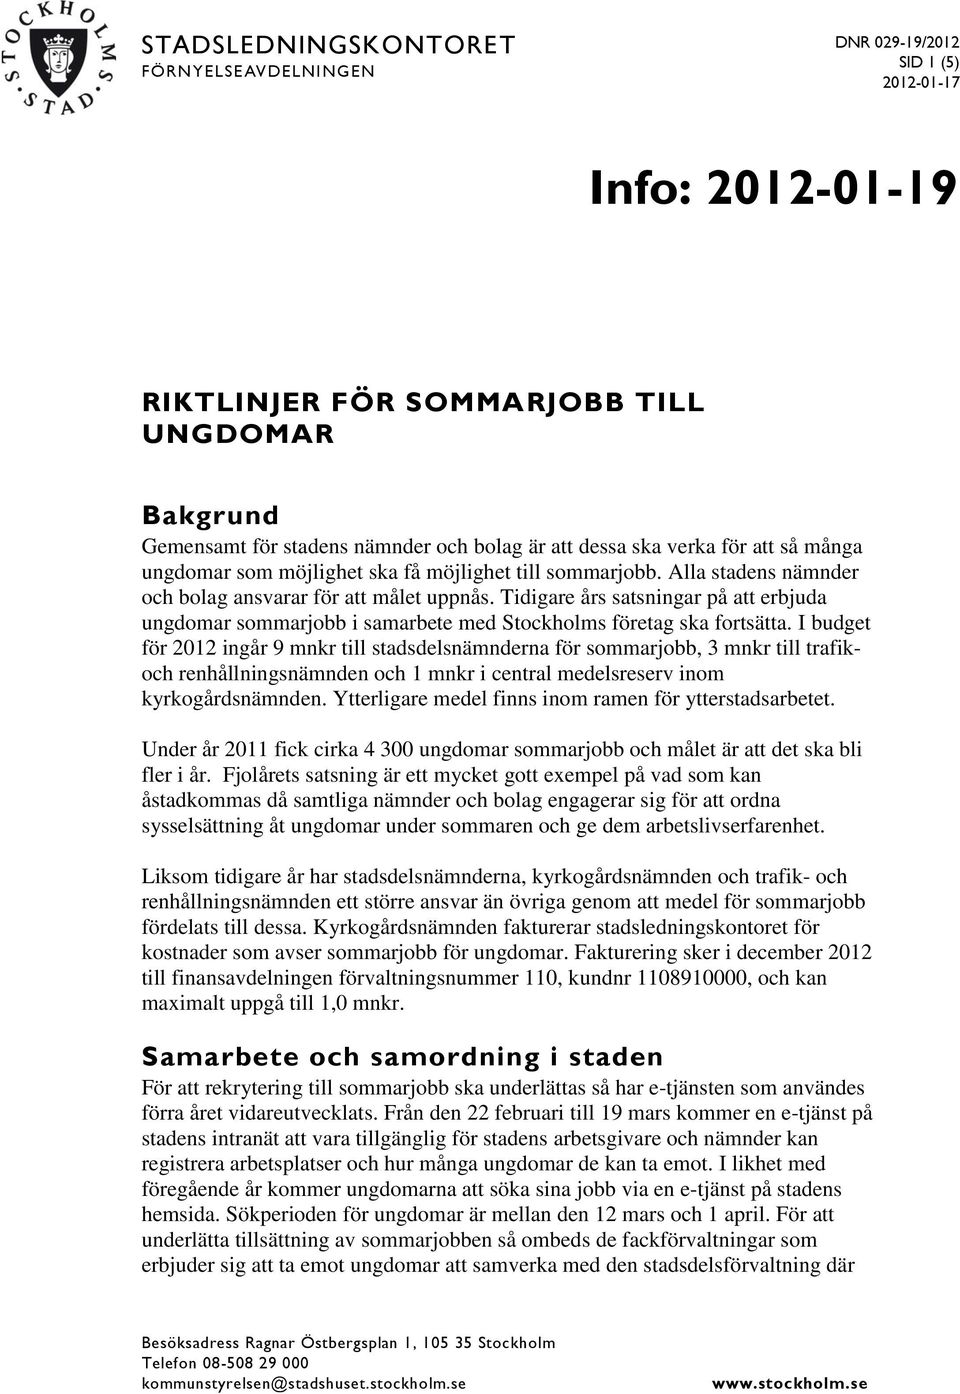 RIKTLINJER FÖR SOMMARJOBB TILL UNGDOMAR - PDF Free Download